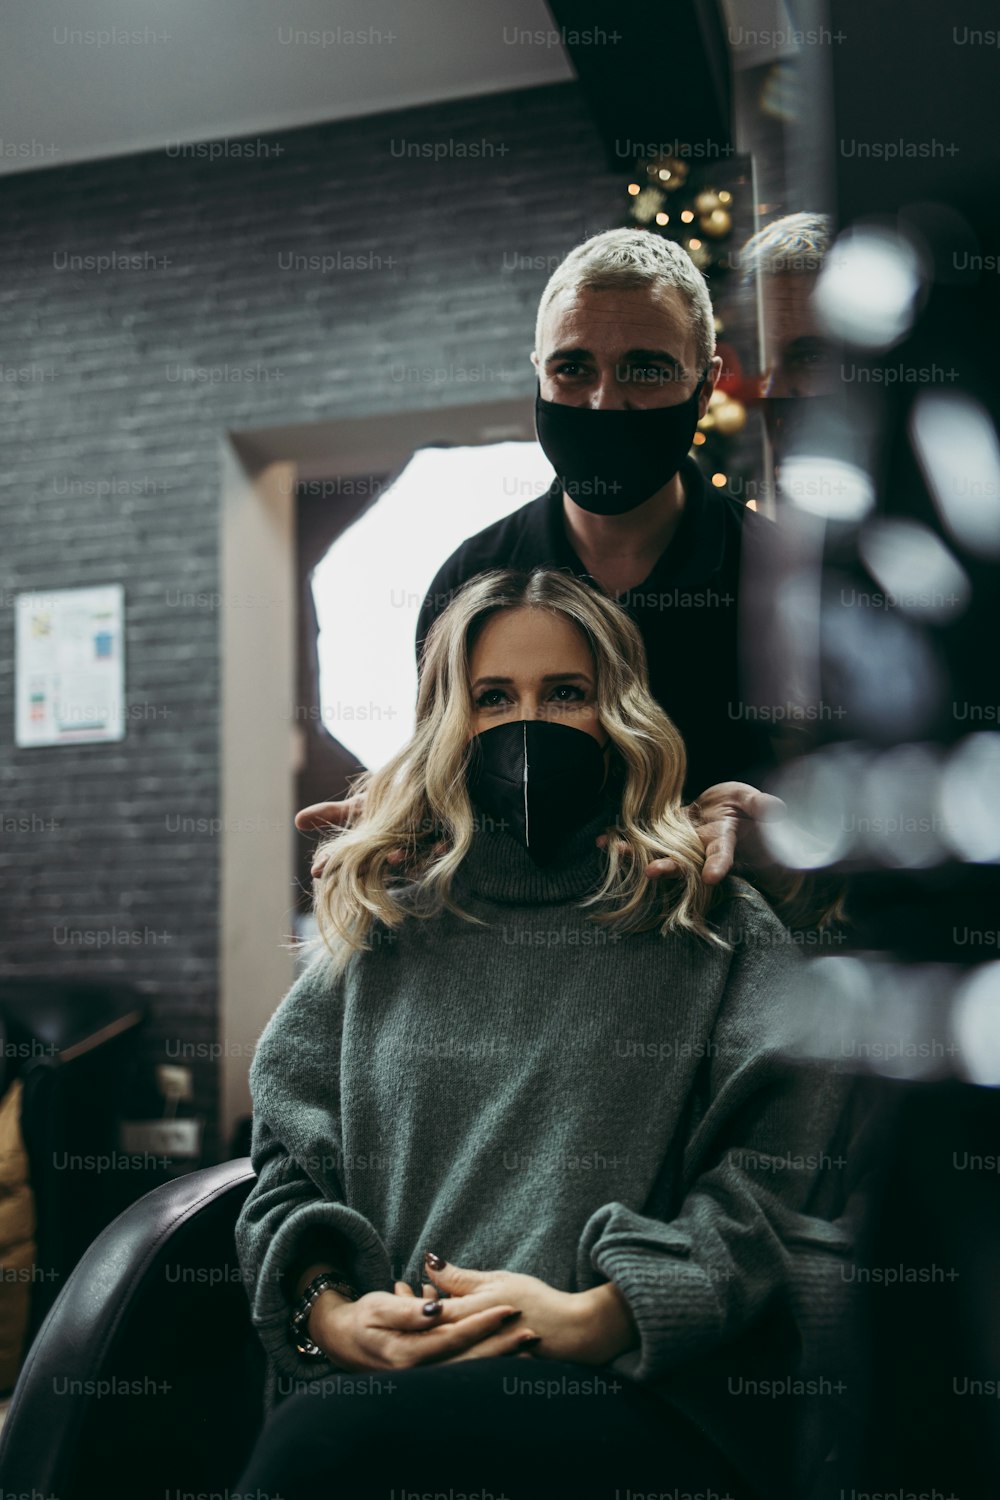 Penteado bonito da mulher depois de tingir o cabelo e fazer destaques no salão de cabeleireiro. Ela está usando máscara facial de proteção como proteção contra a pandemia de vírus.